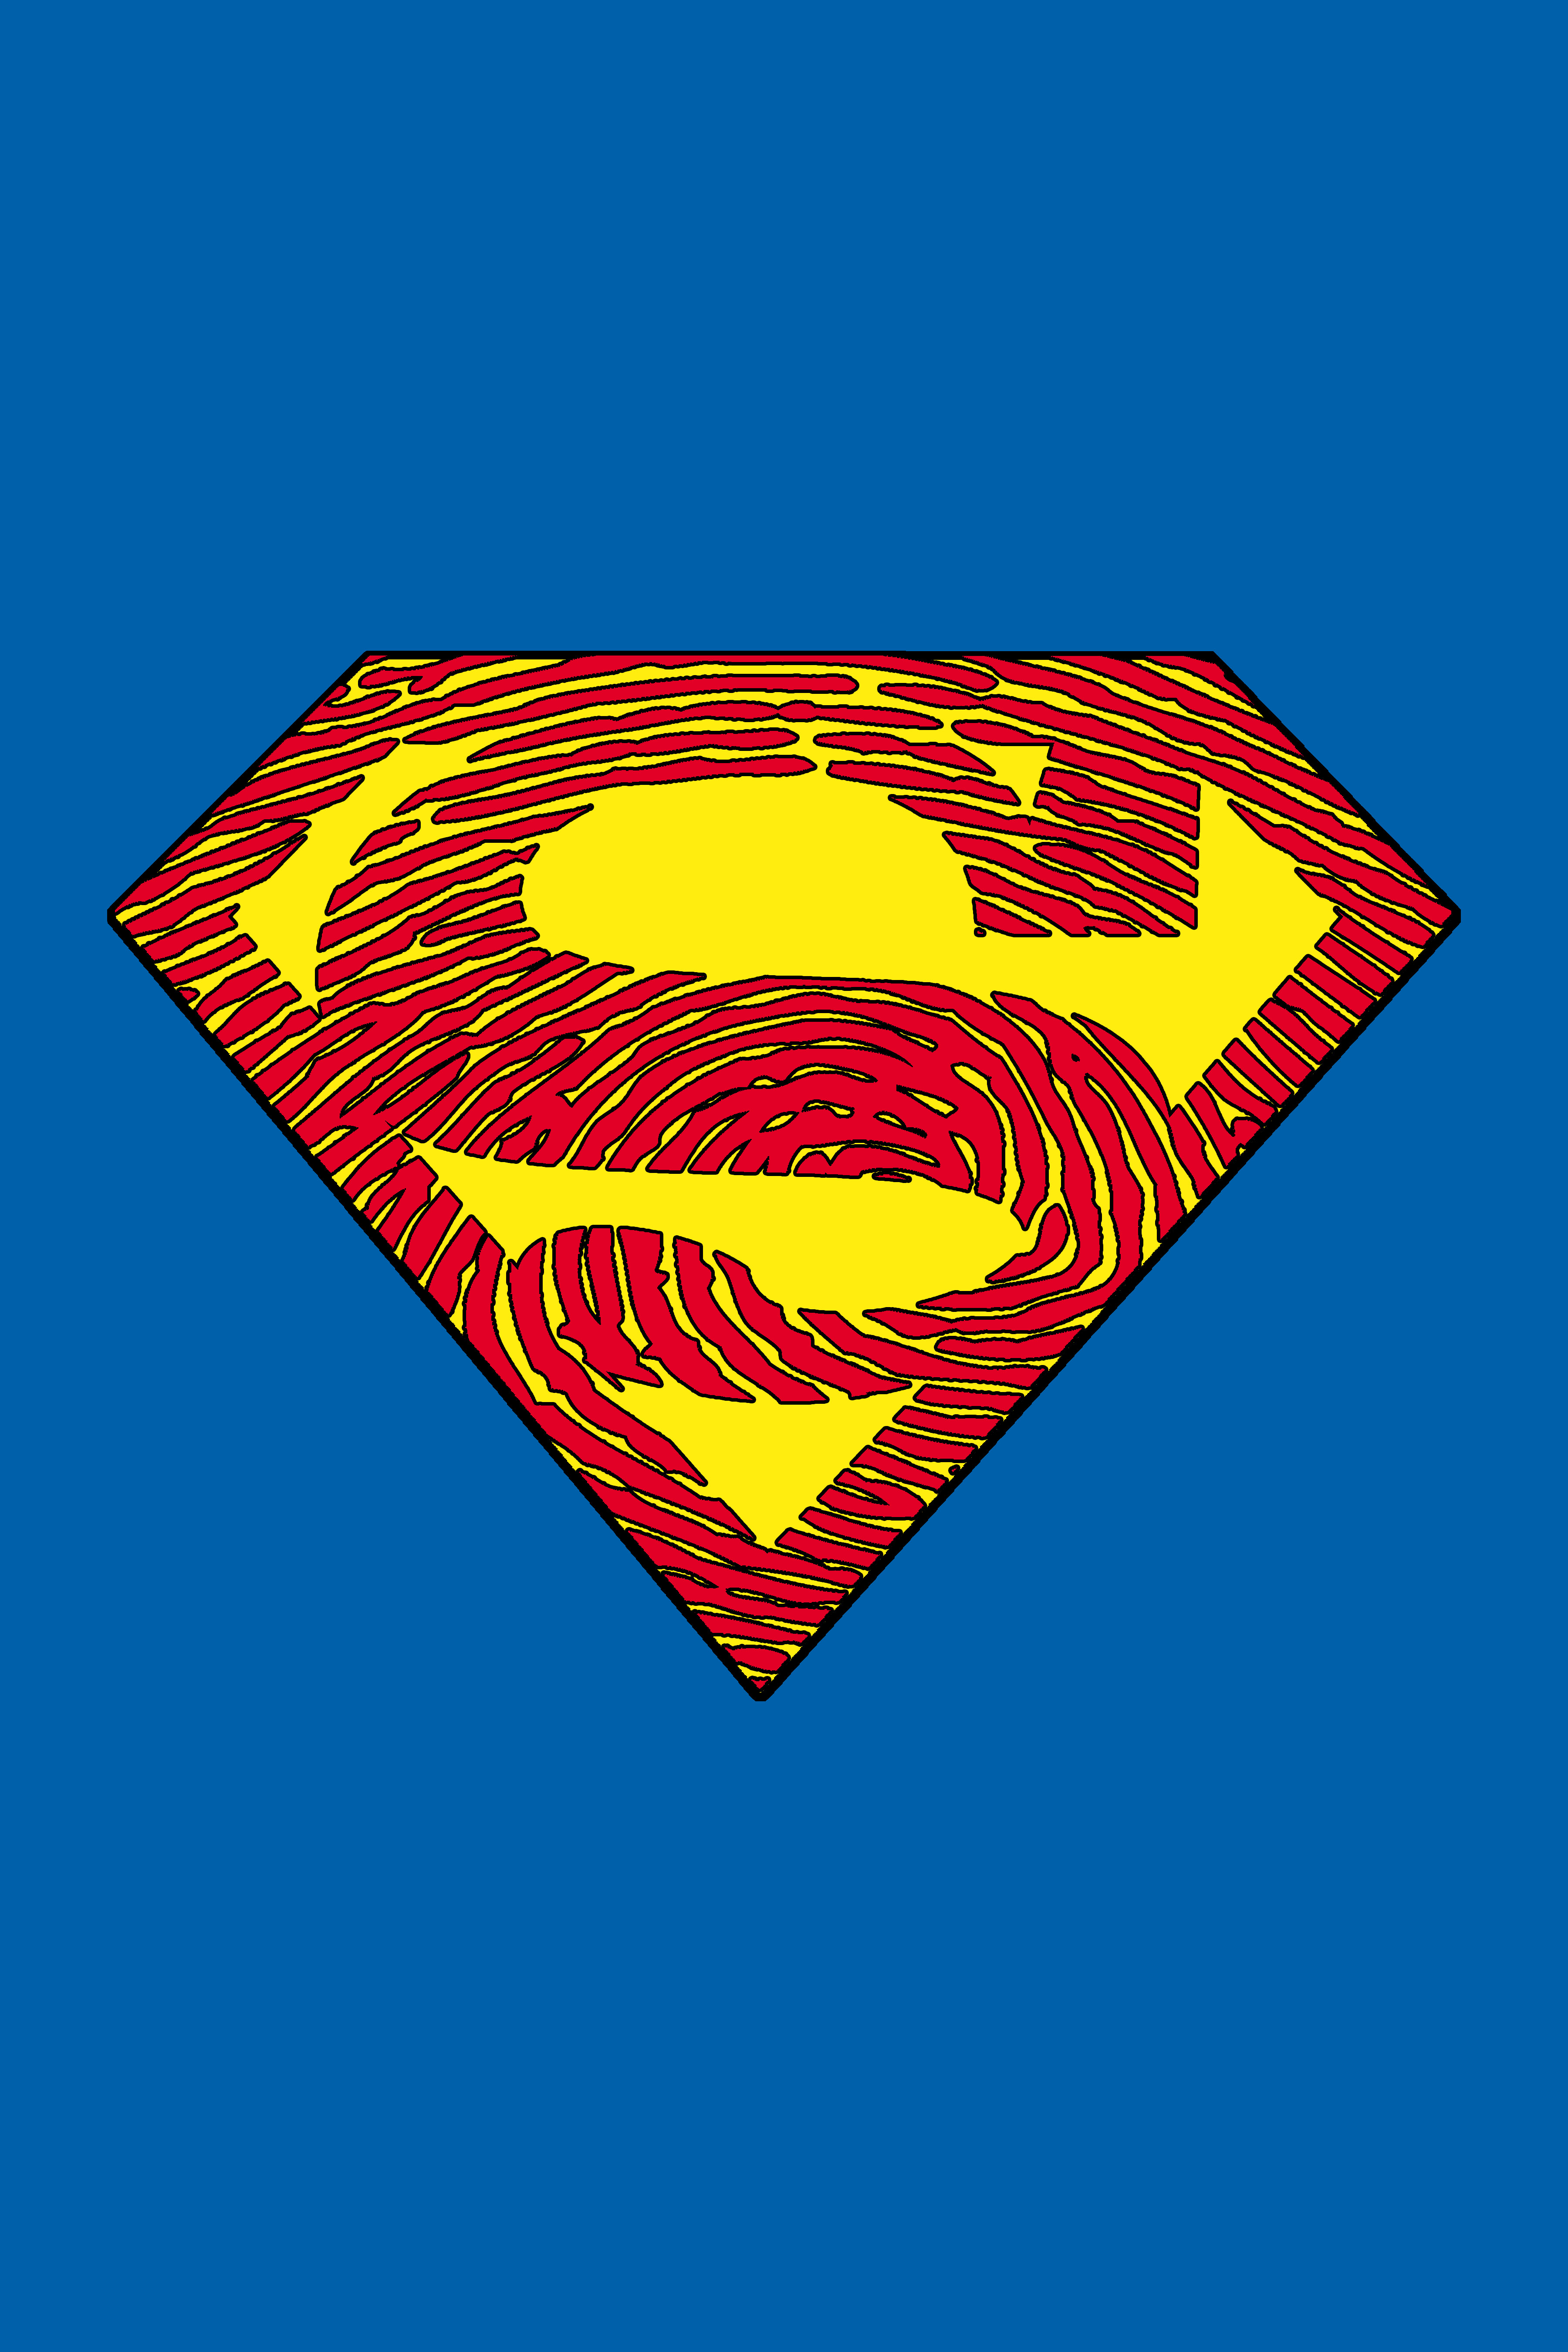 Superman logo my fingerprint art jpg